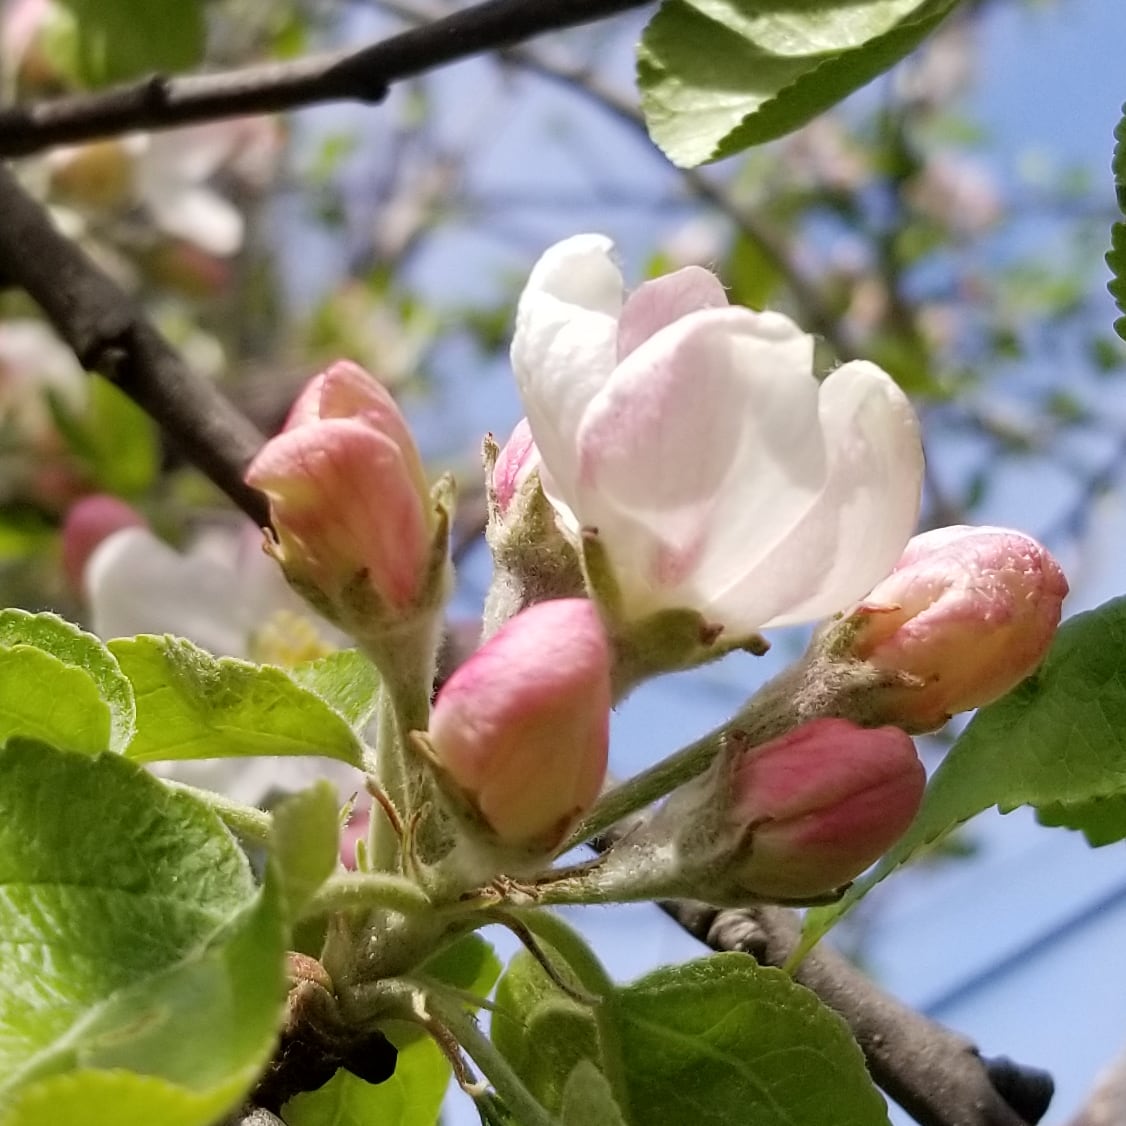 Apple blossoms. 
#spring #springwatch #garden #gardening #appleblossoms #blossomwatch #shareyourweather